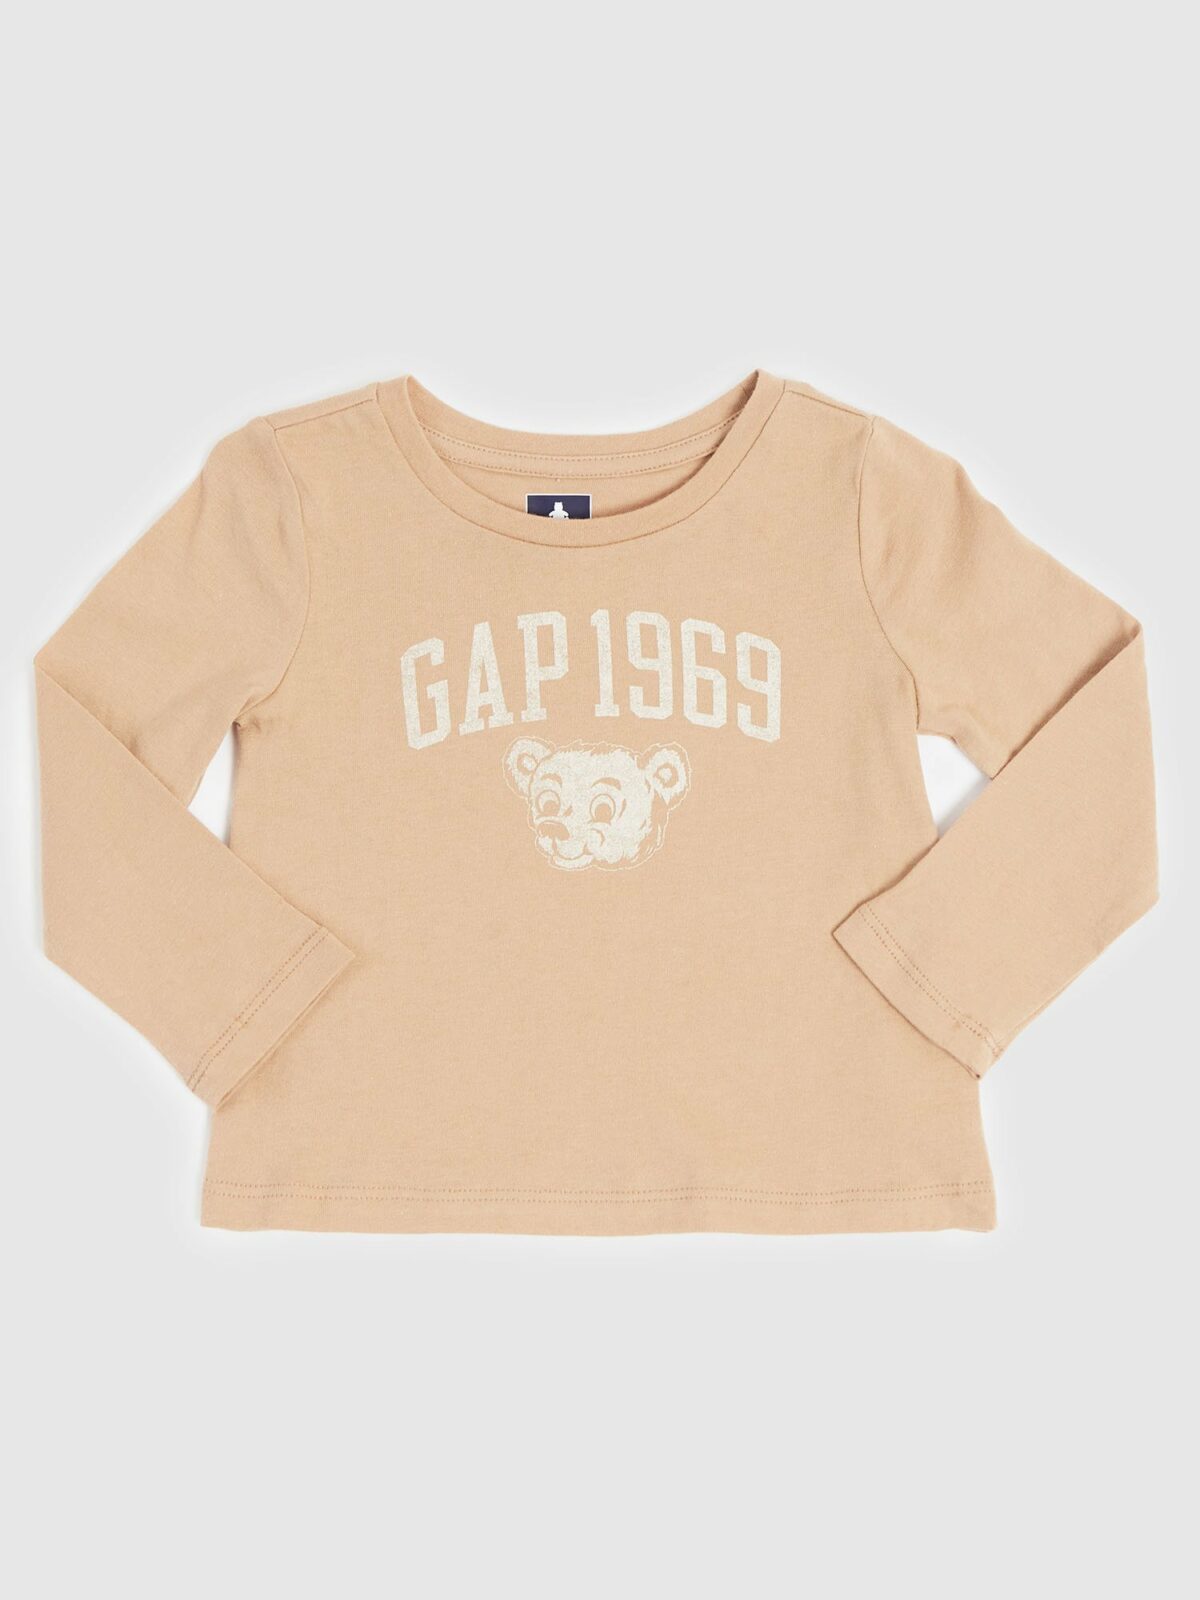 GAP Dětské tričko organic 1969